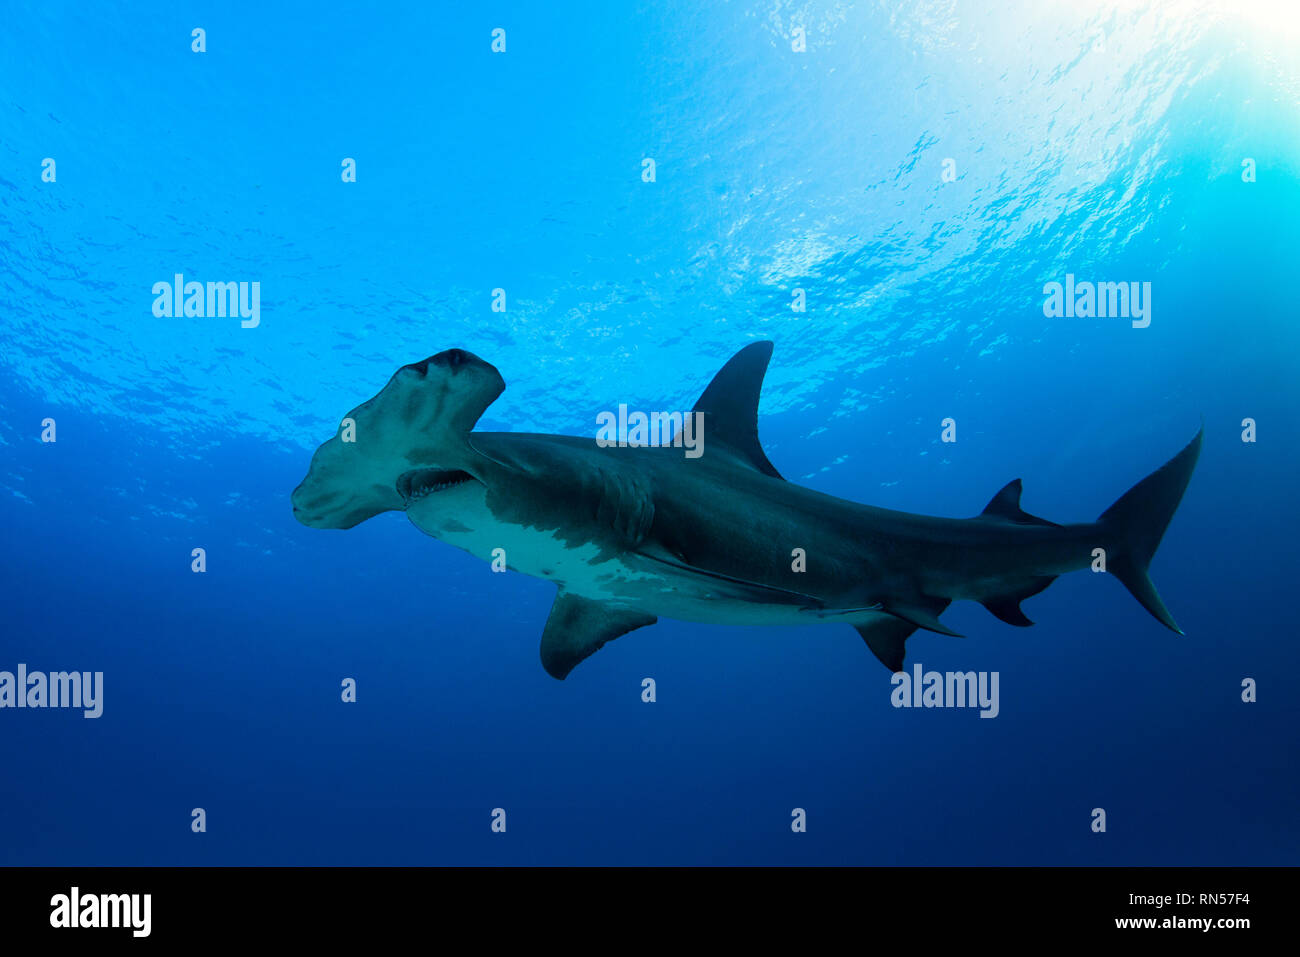 Grand requin marteau (Sphyrna mokarran) contre l'eau bleue et de la surface. Plage du tigre, Bahamas Banque D'Images